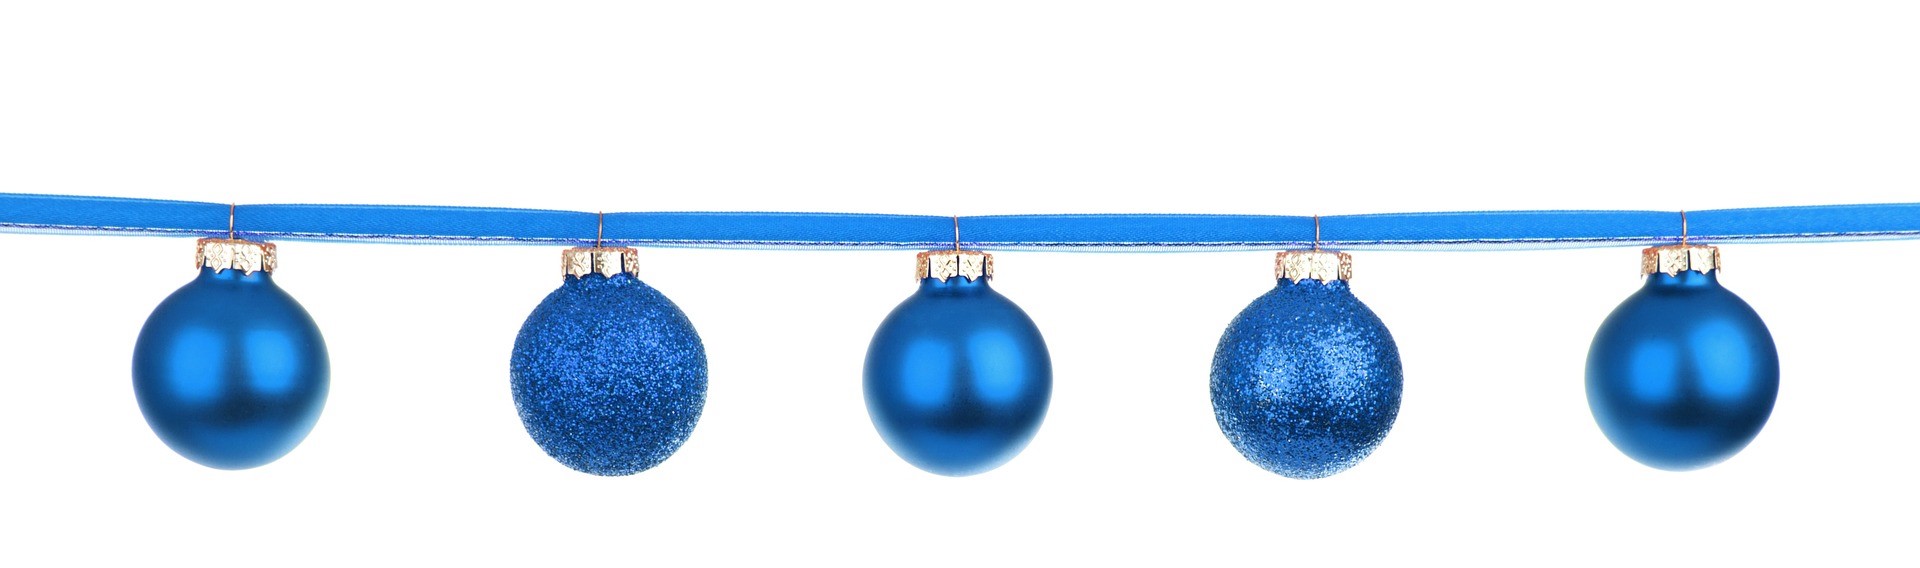 blue ornaments